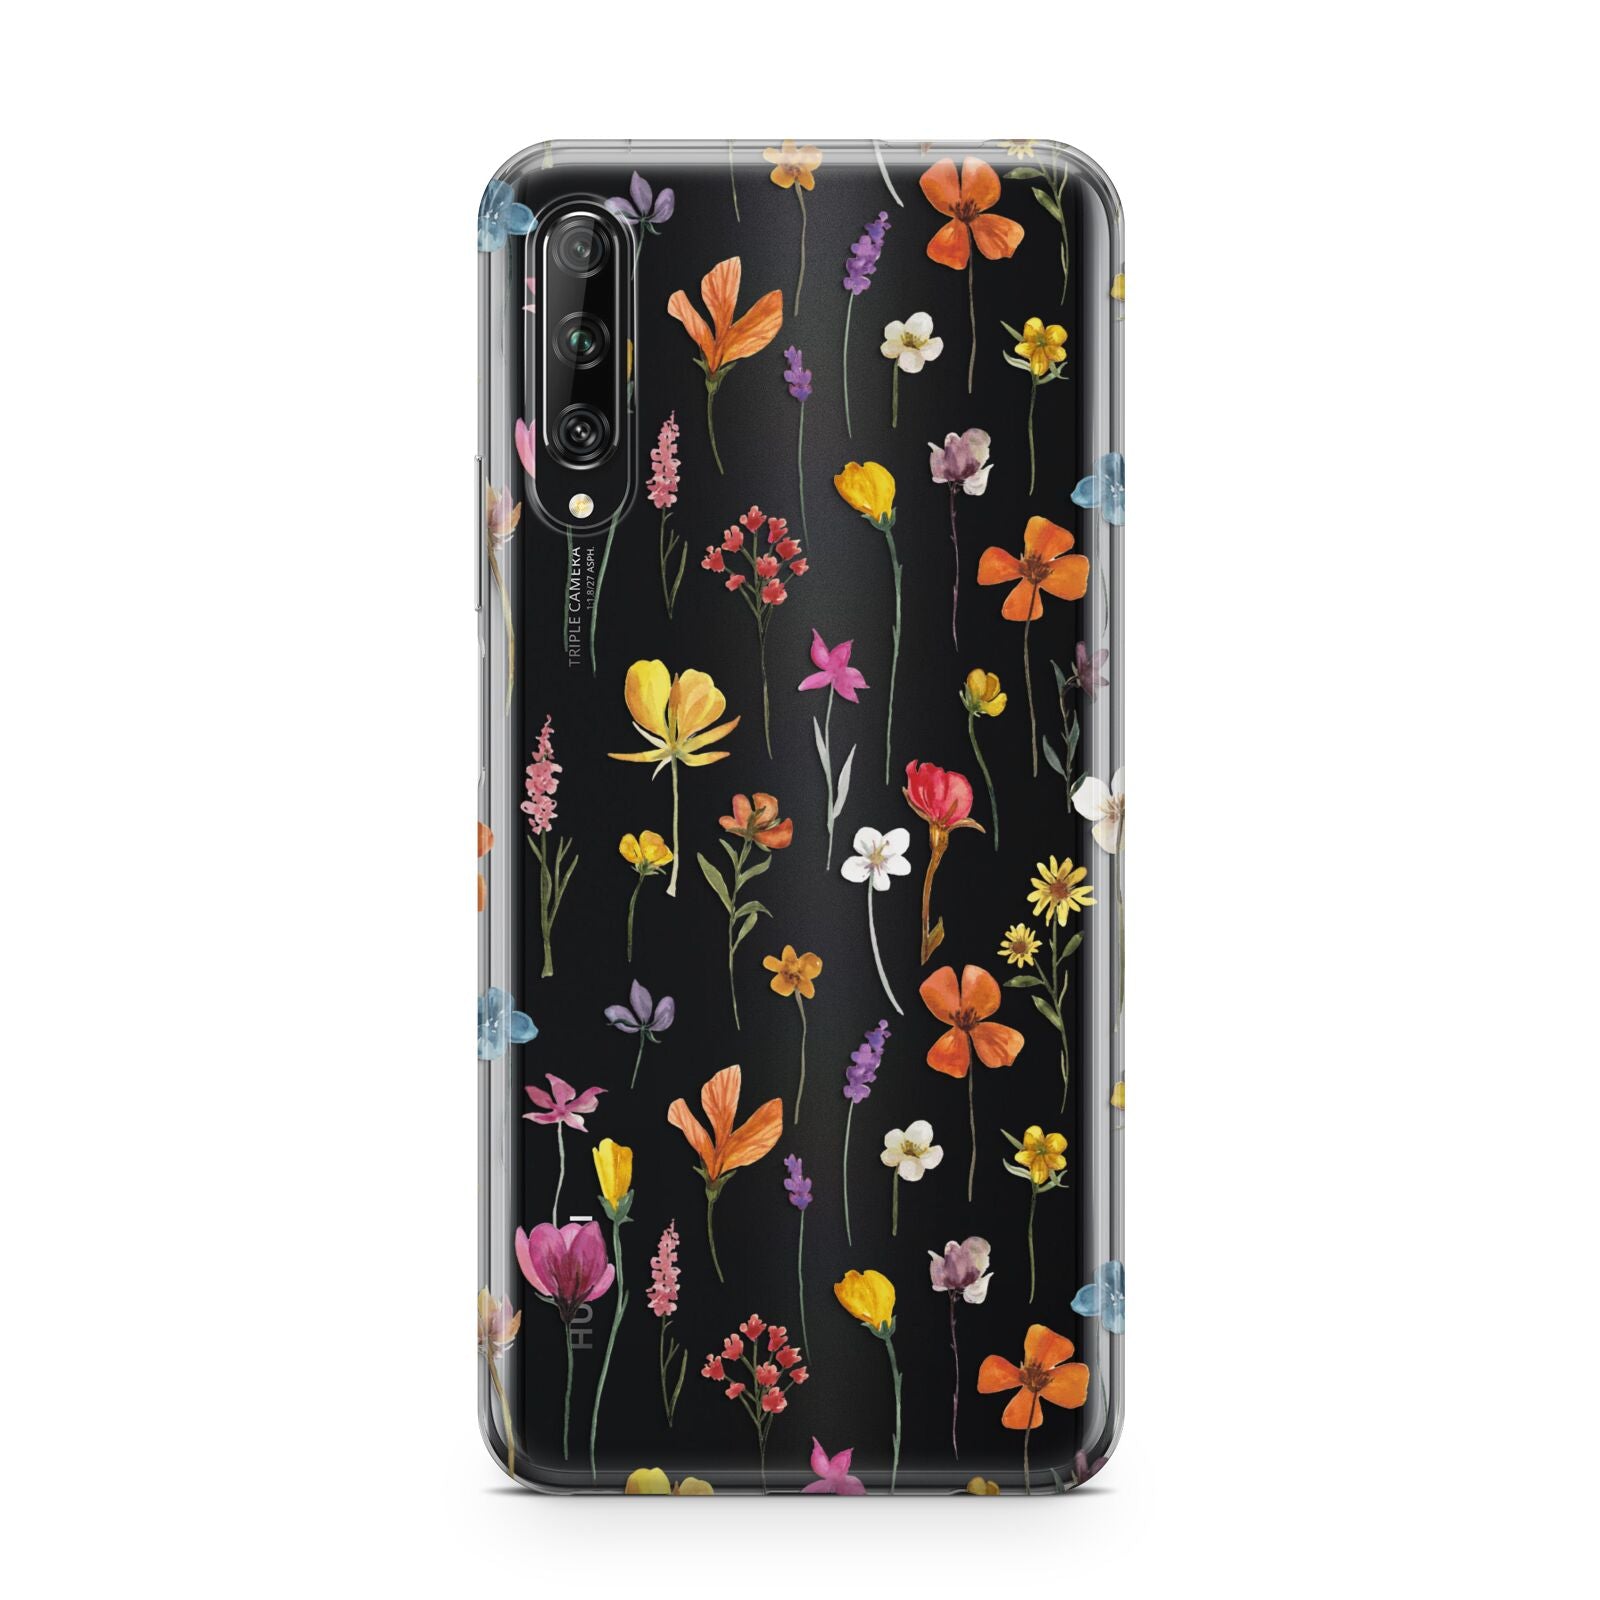 Botanical Floral Huawei P Smart Pro 2019